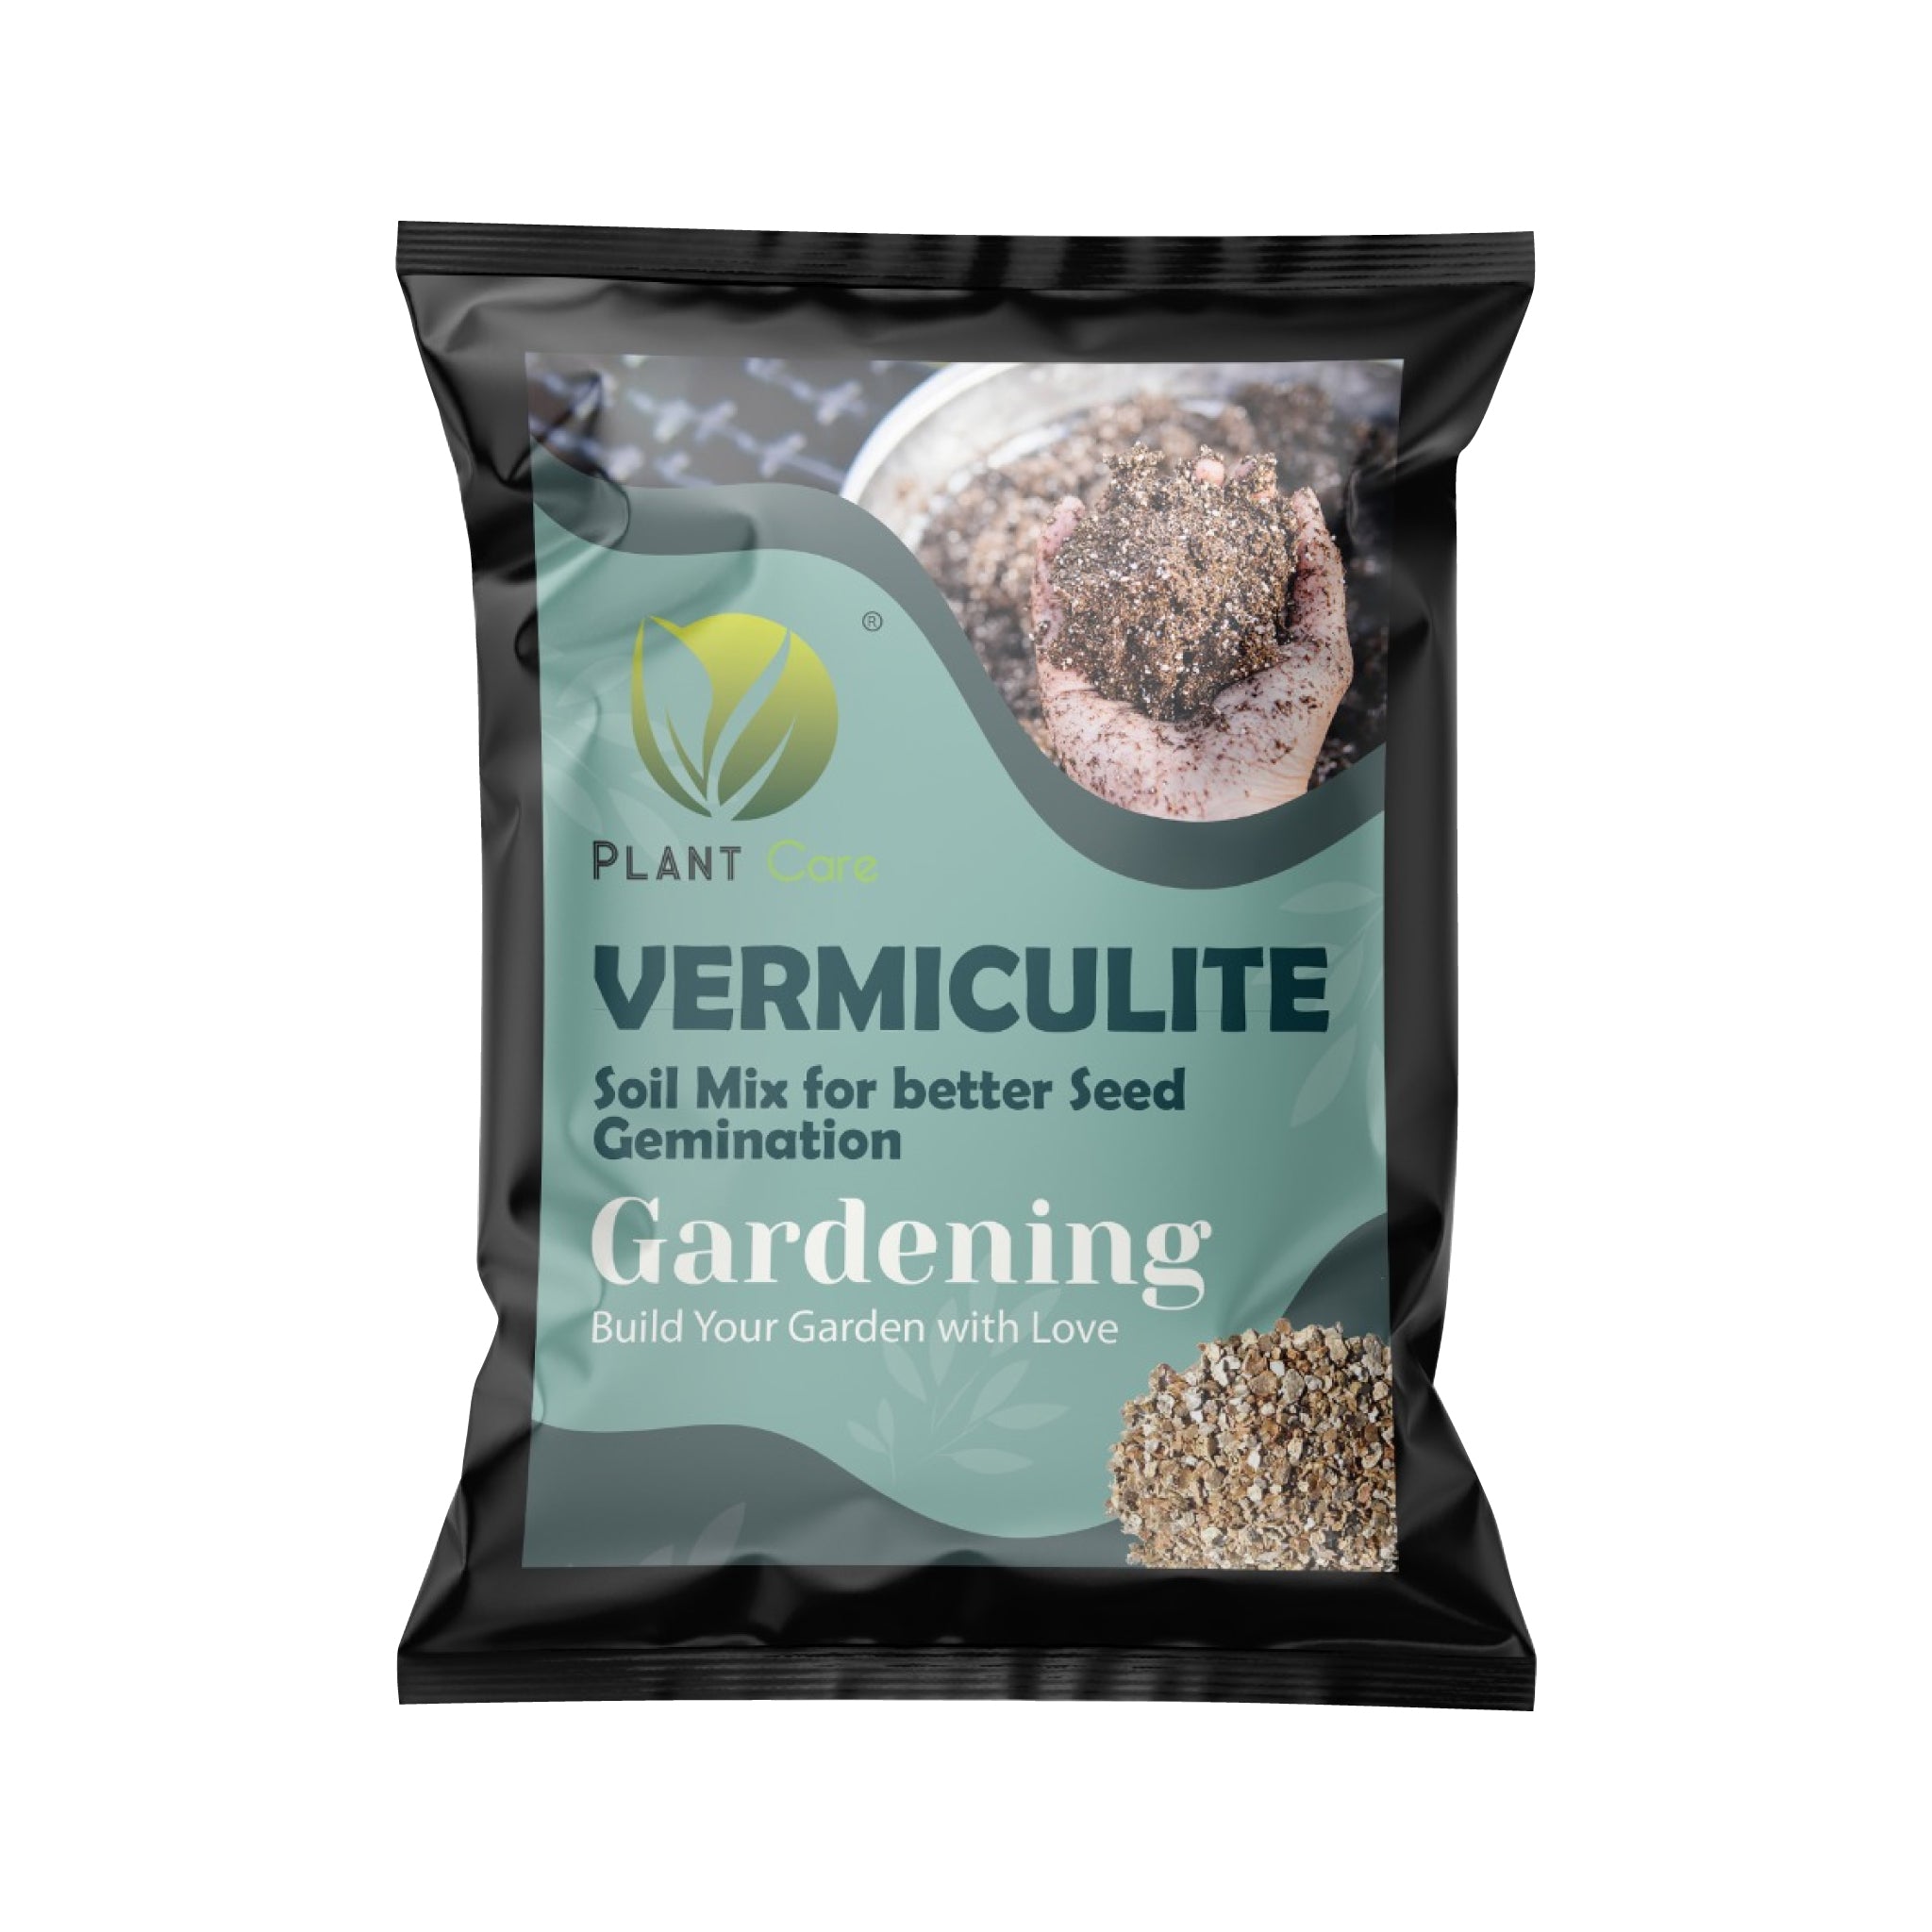 Maximize your plants' growth with our premium vermiculite soil amendment